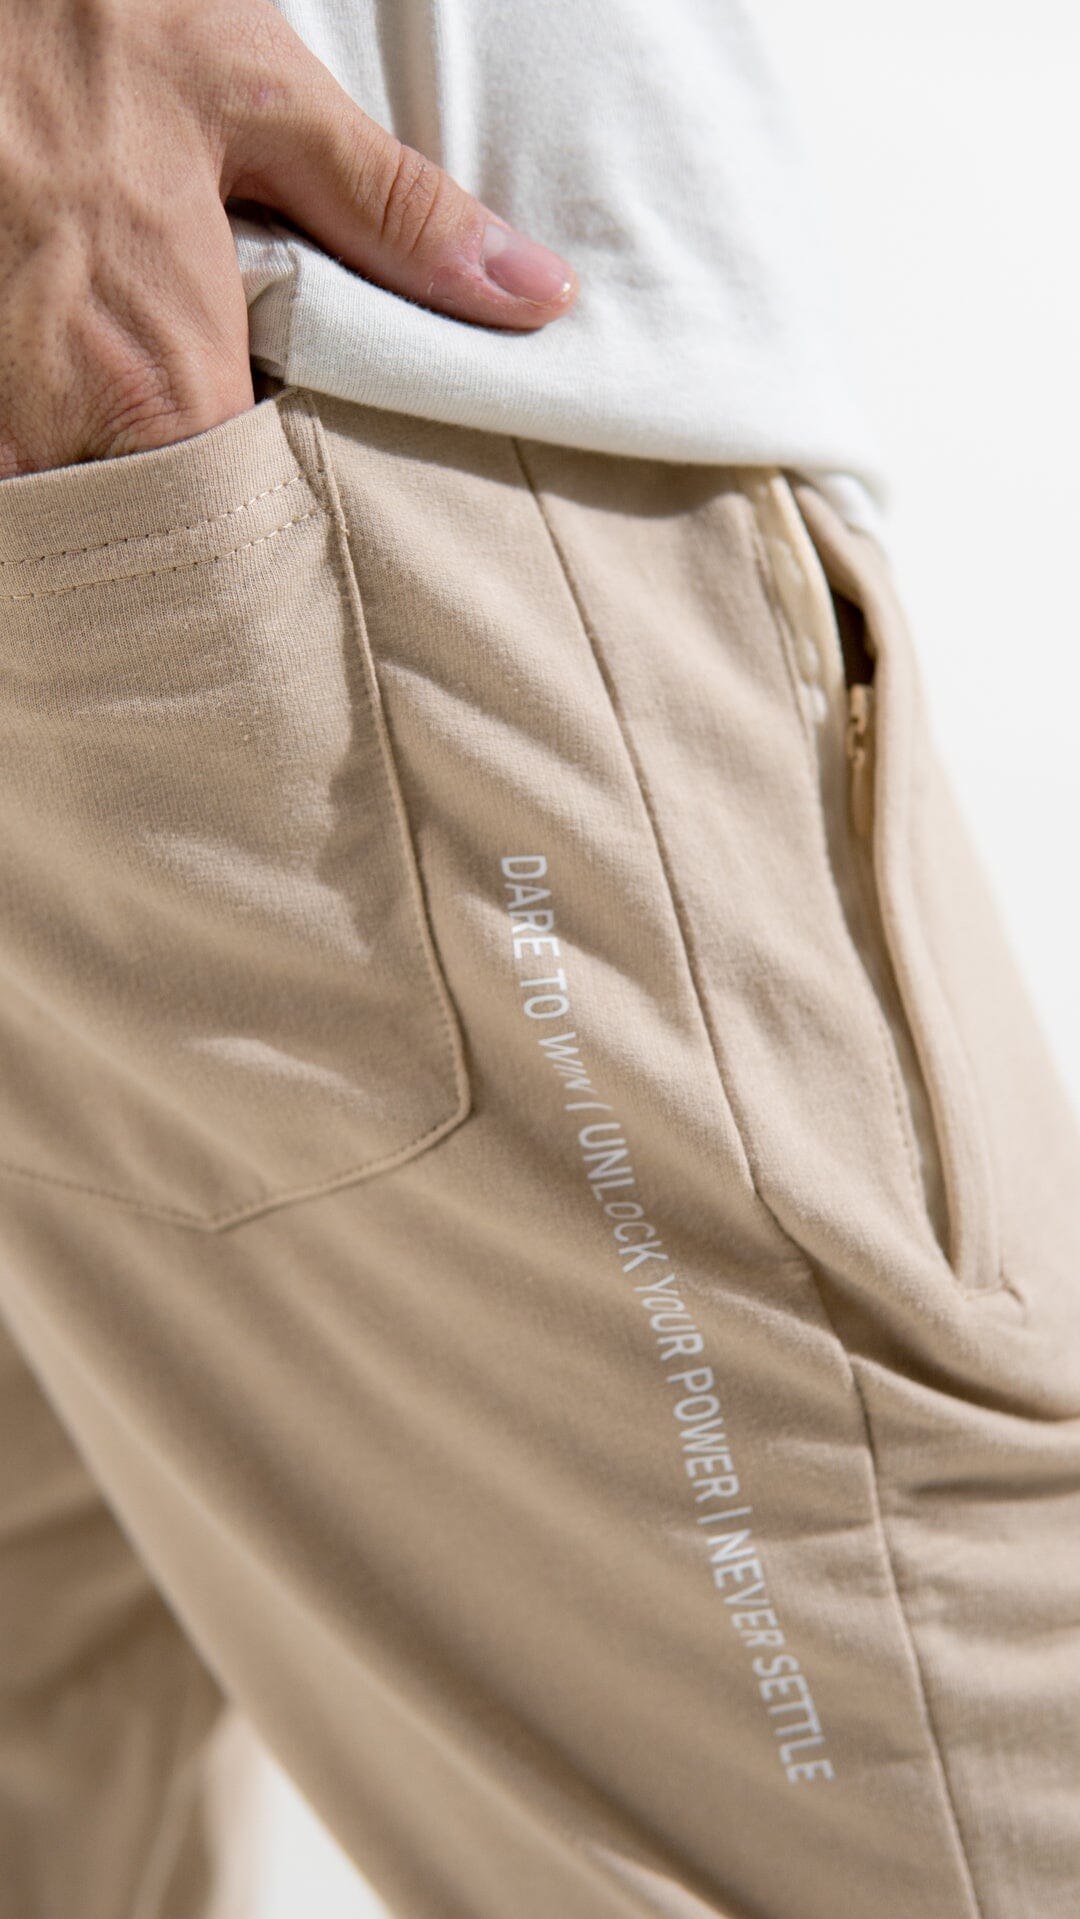 Polo Republica Men's Essentials Slim-Fit Joggers Men's Trousers Polo Republica 